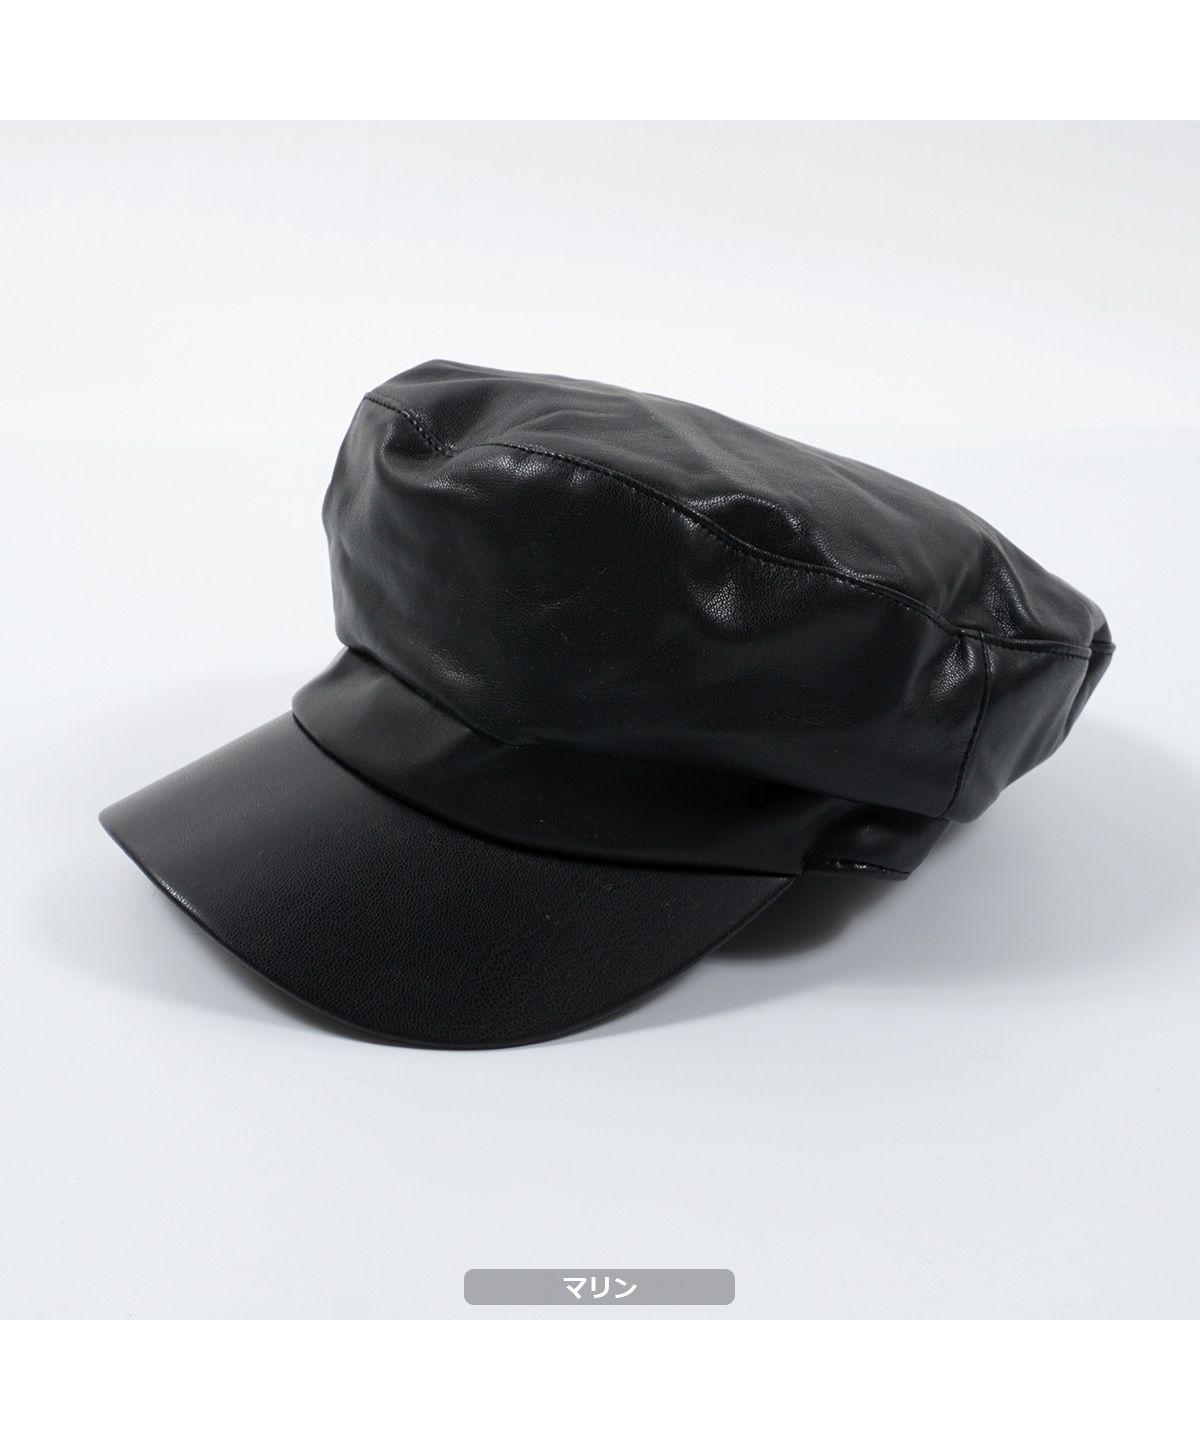 【セール】帽子 レディース ベレー キャスケット マリン フェイクレザー アソート キャップ PU レザー ベレー帽 マリンキャップ 黒 シンプル  無地 フリーサイ(504523378) | ワンフォークロージング(1111clothing) - MAGASEEK